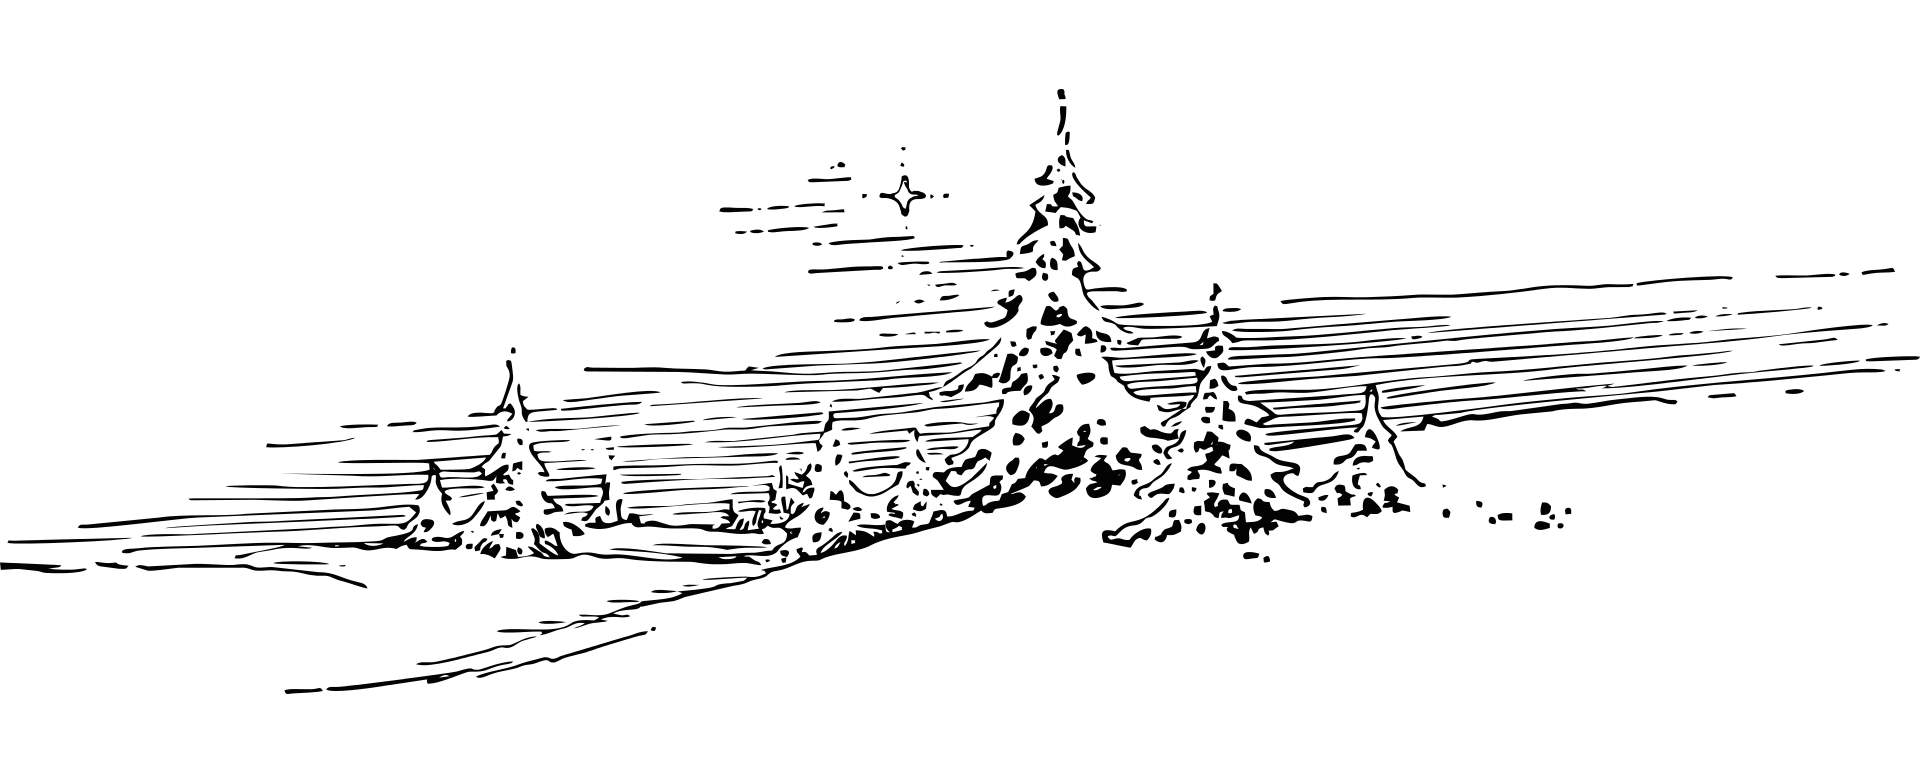 Czarno biały rysunek przedstawiający choinki